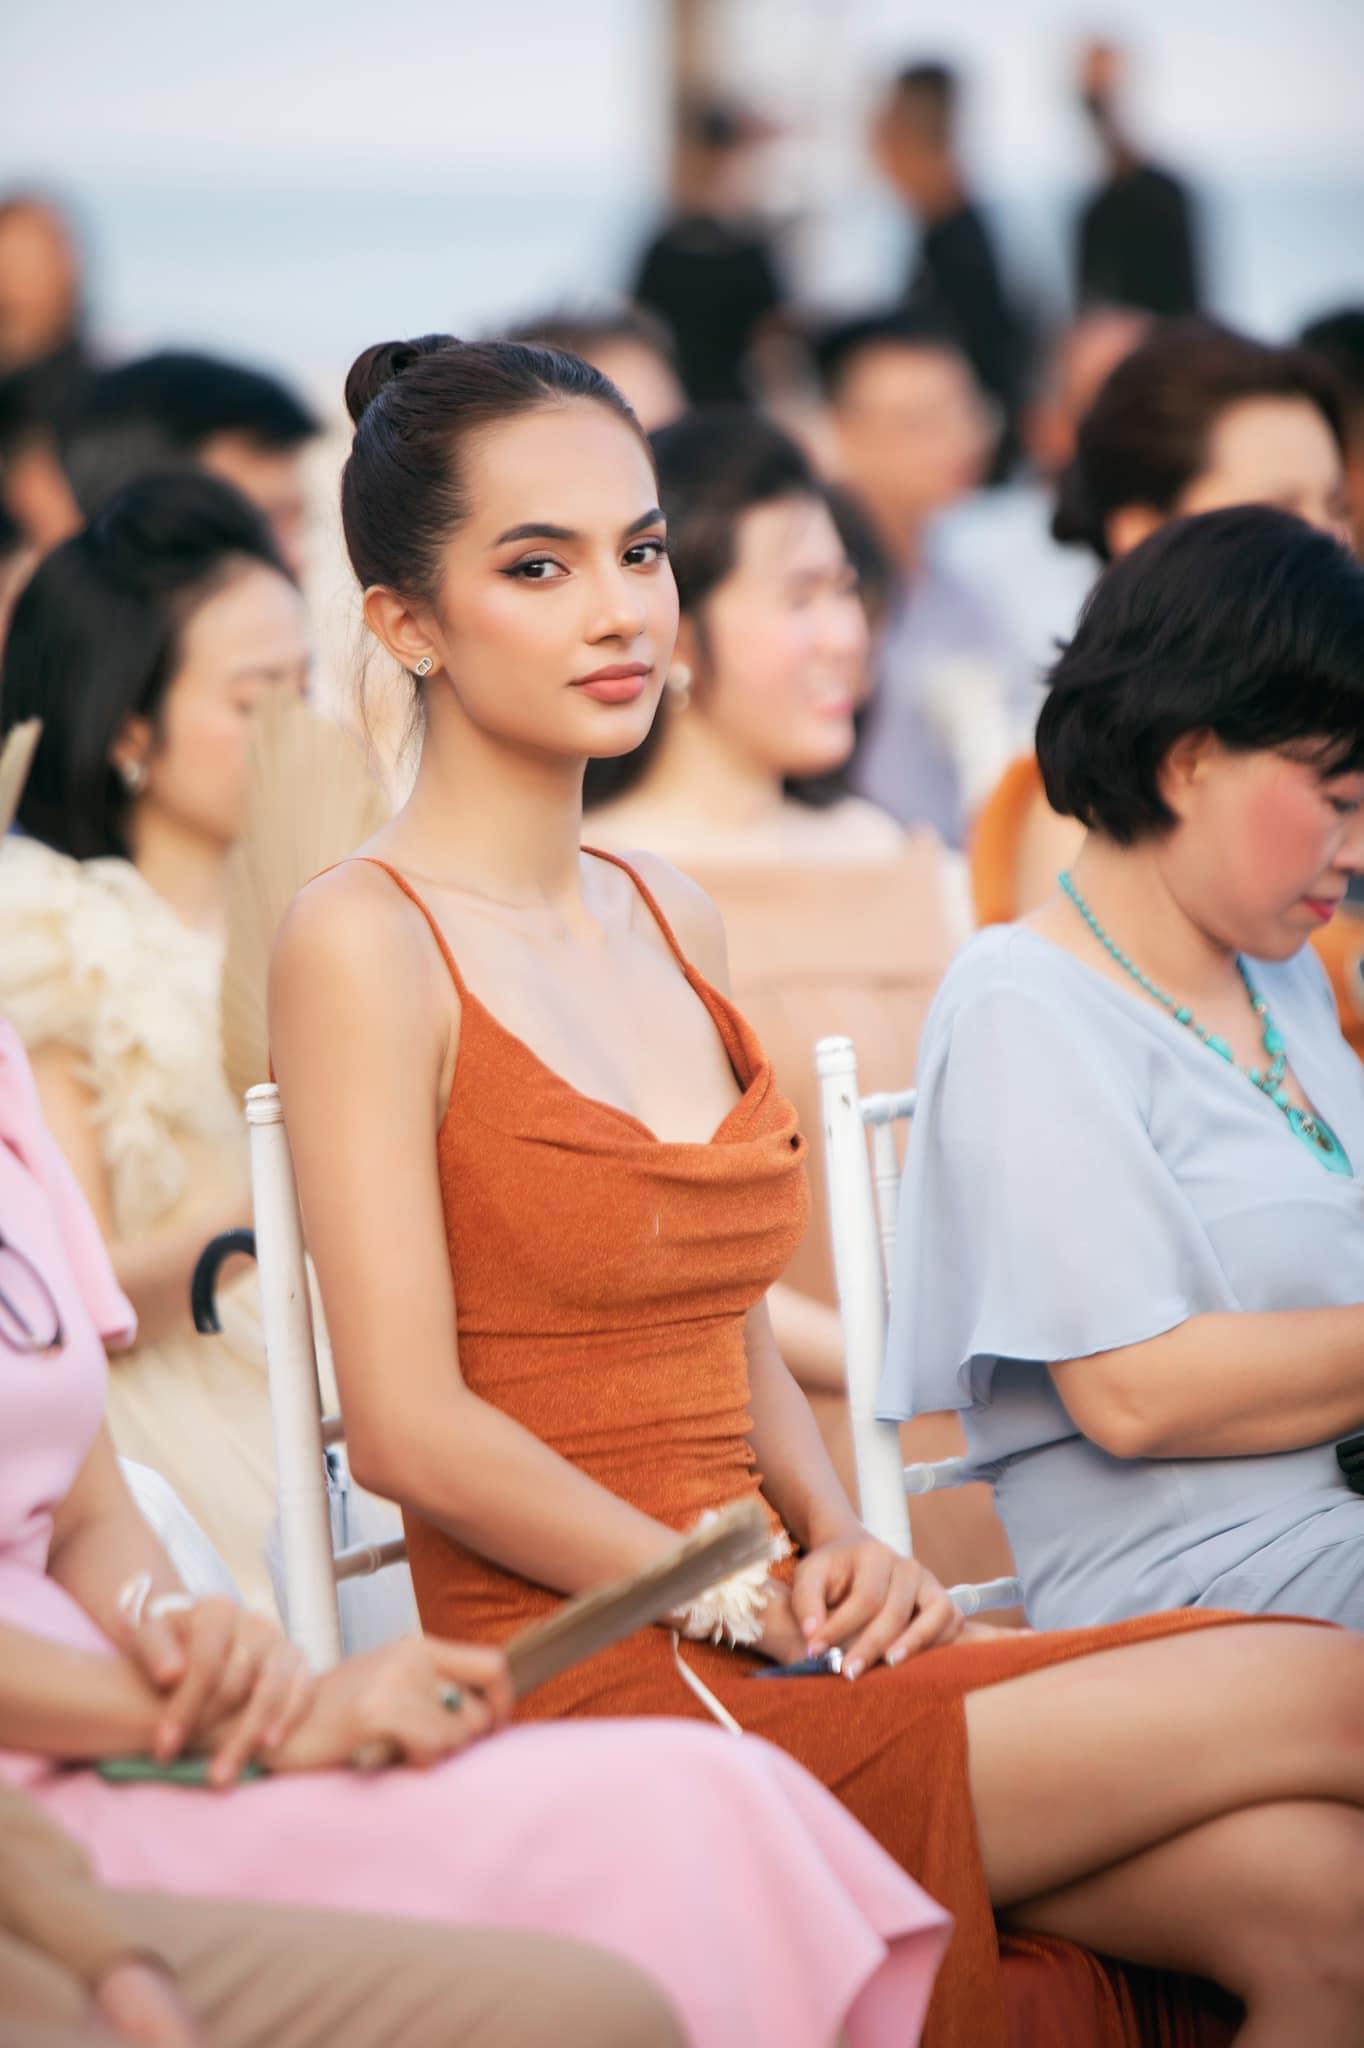 "Người đẹp gốc Việt lai Tây Ban Nha" gây điên đảo vì nhan sắc hoa hậu - 4